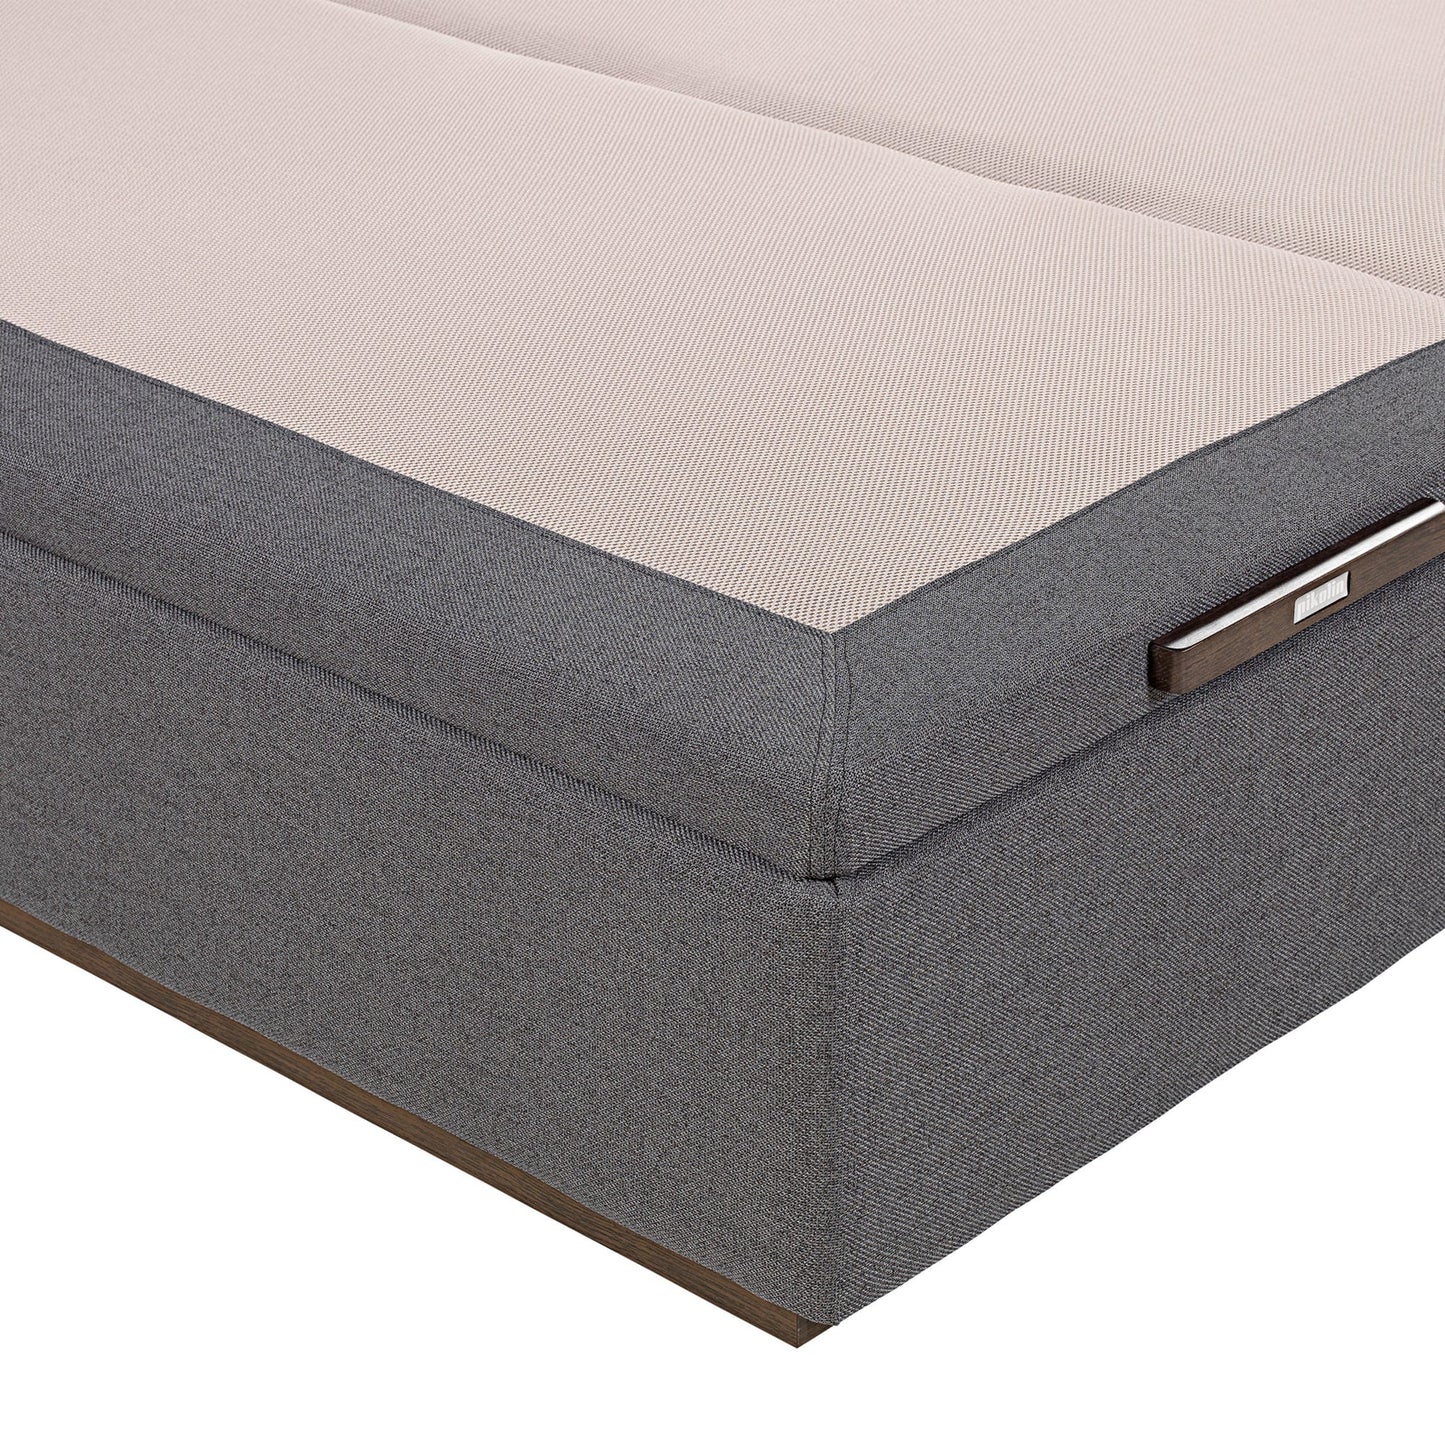 Canapé abatible de tapa doble de color piombo - TEXTIL - 135x200